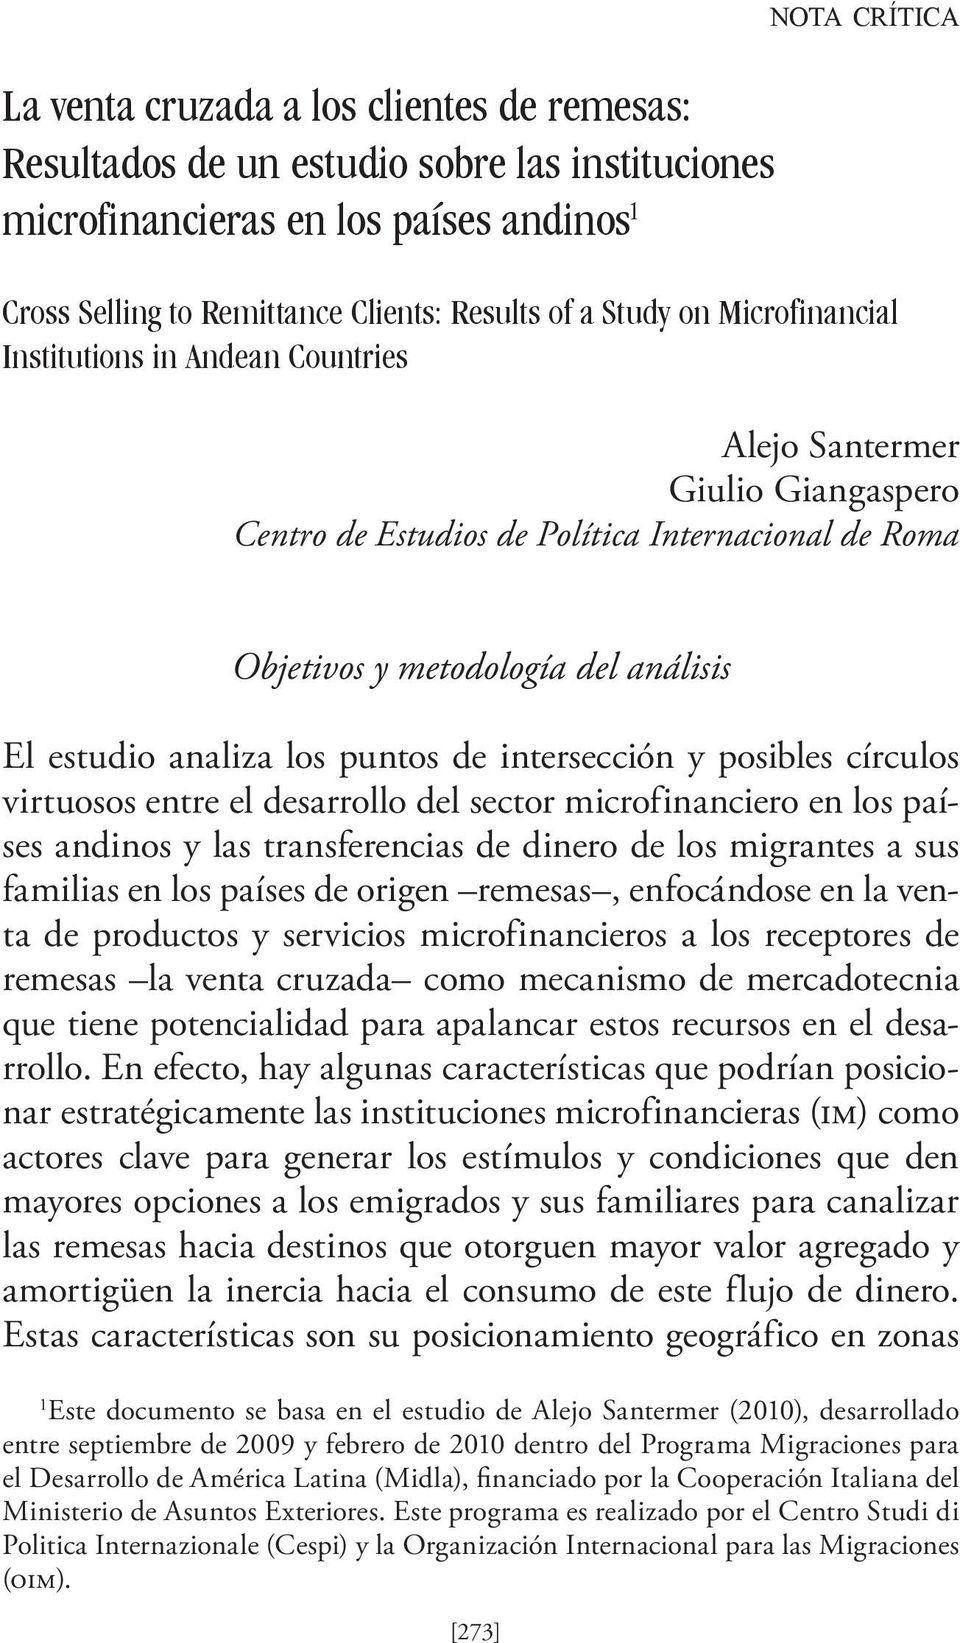 analiza los puntos de intersección y posibles círculos virtuosos entre el desarrollo del sector microfinanciero en los países andinos y las transferencias de dinero de los migrantes a sus familias en